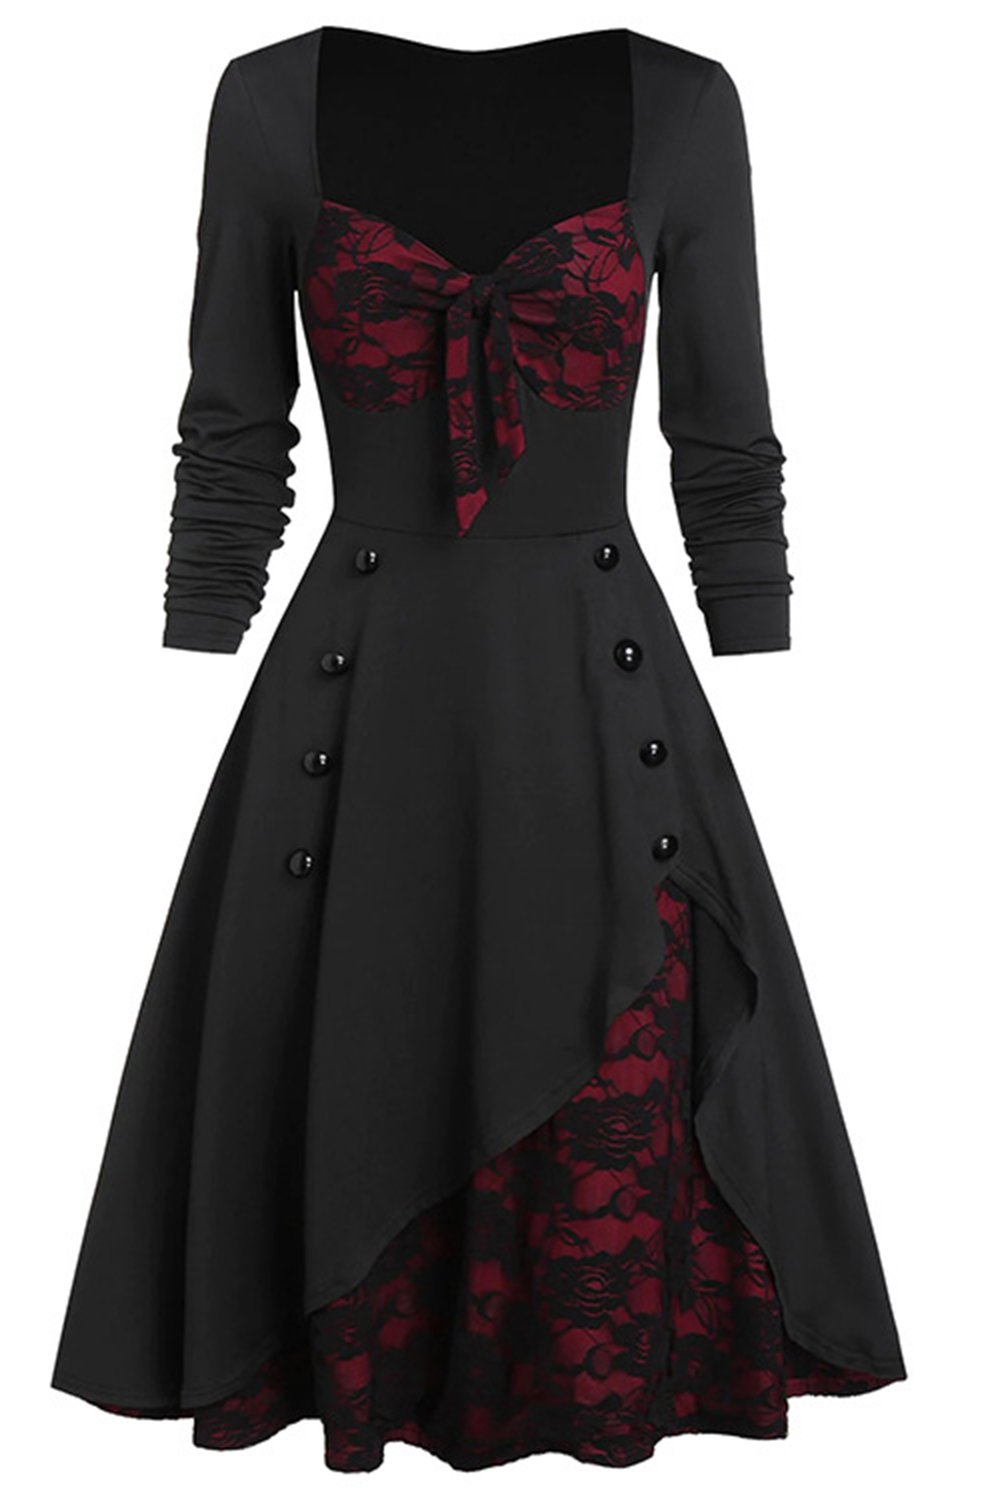 Czarno-bordowa sukienka Halloween w stylu vintage